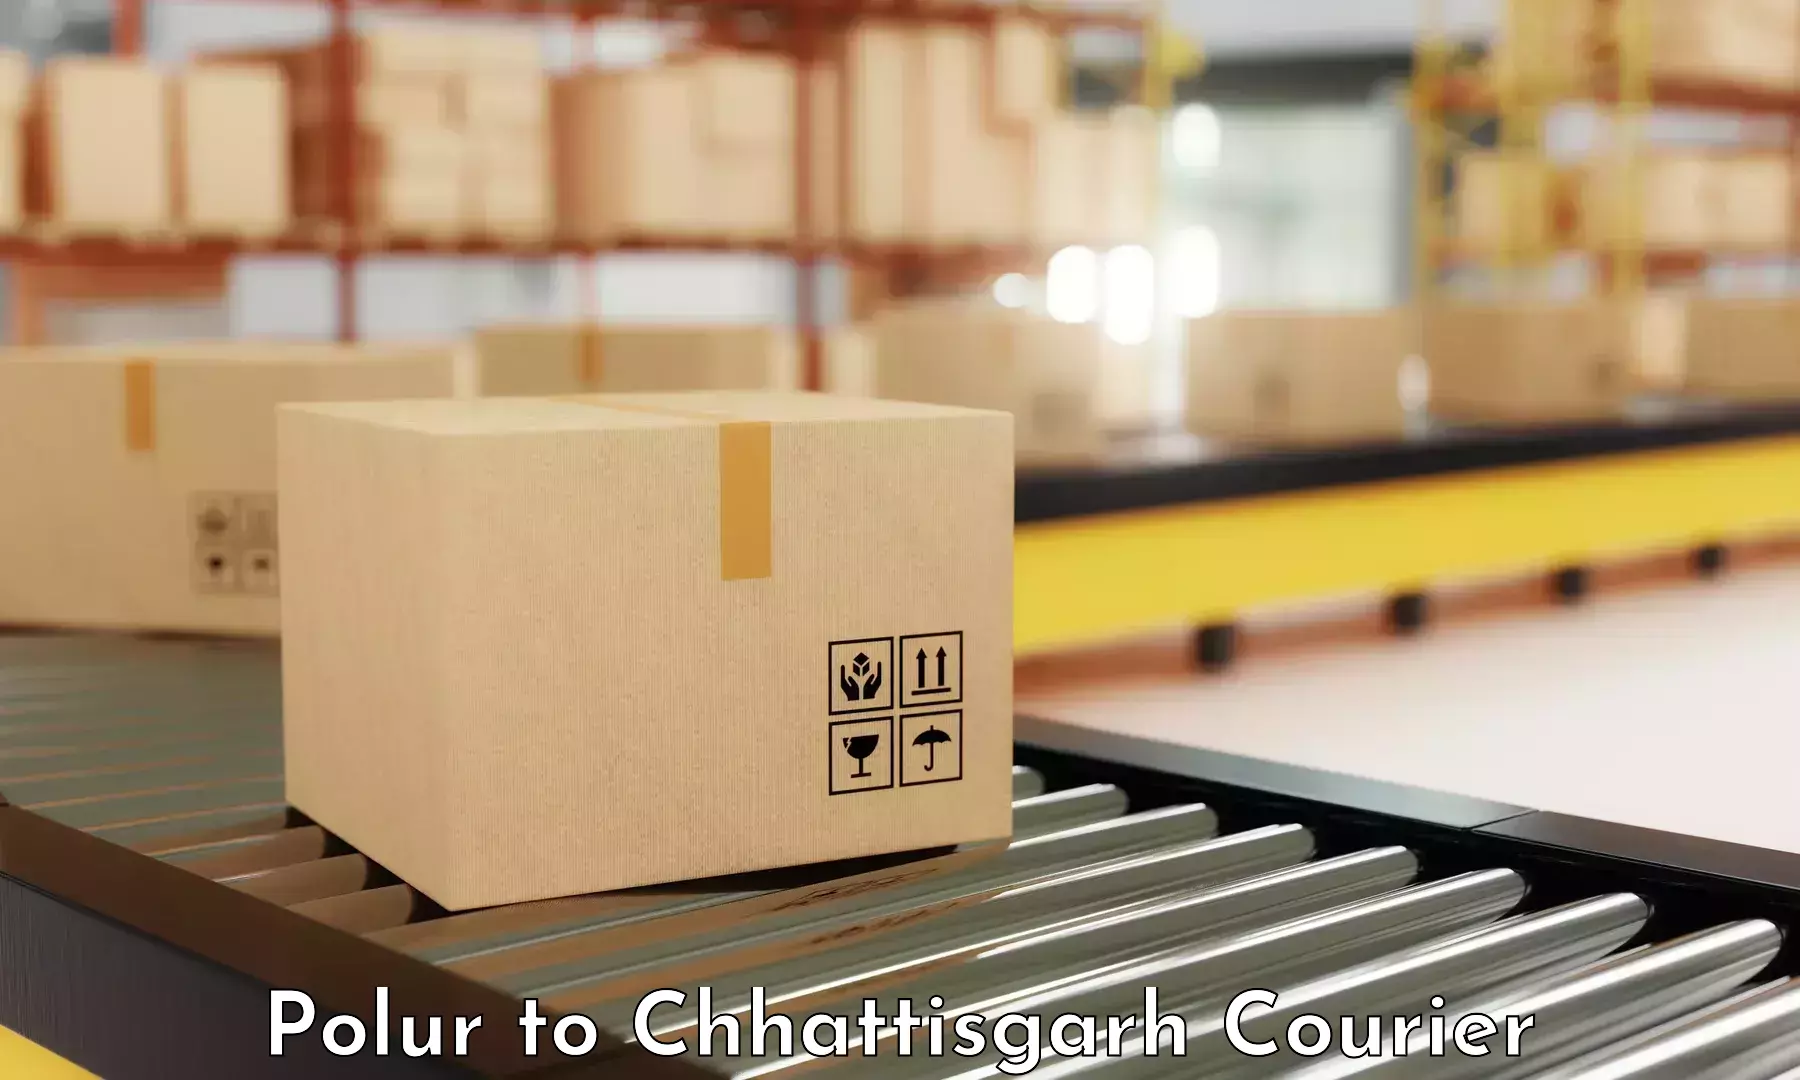 Large package courier Polur to Korea Chhattisgarh